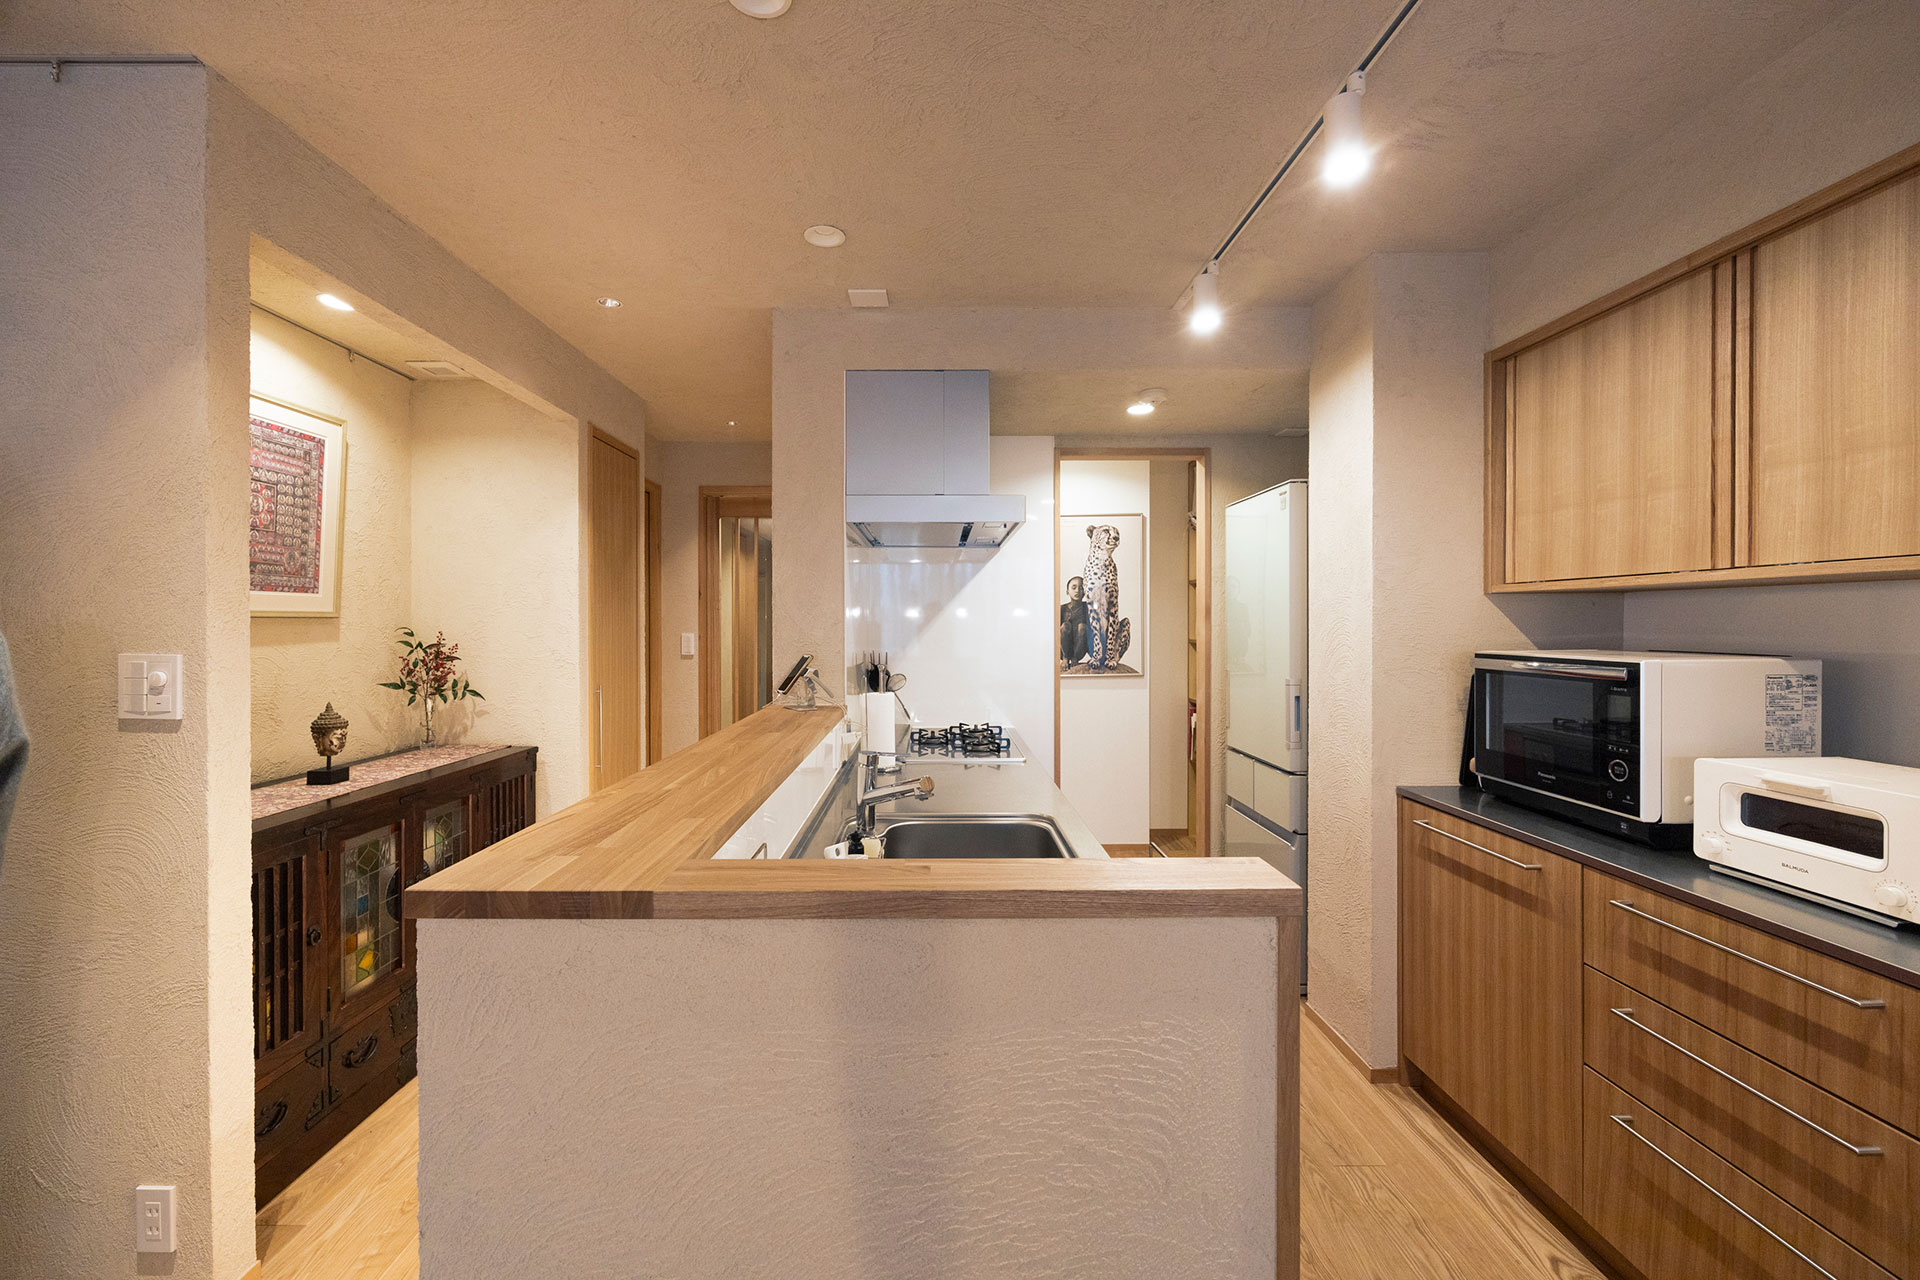 キッチンにはスポットライトを当てて、空間を演出。キッチン前のスペースは、岩谷堂箪笥に合わせて設計した。